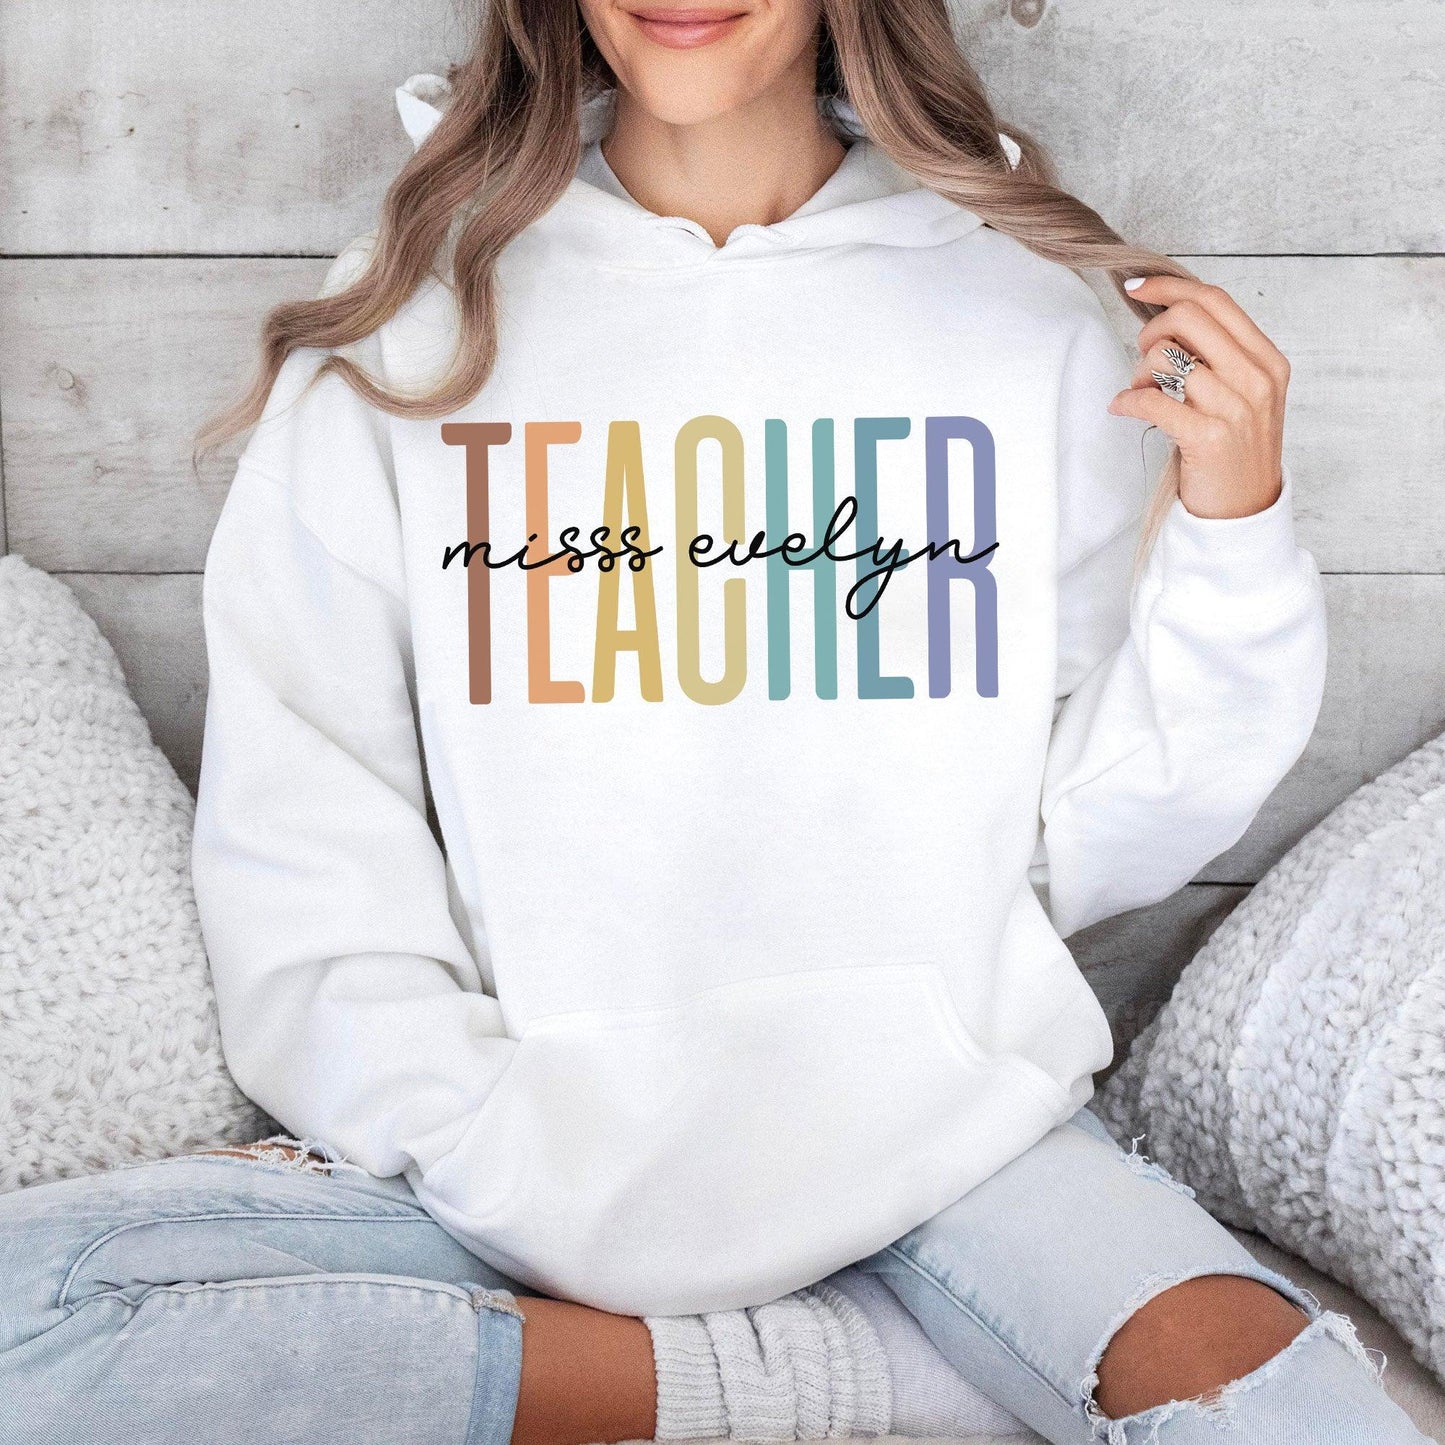 Personalisiertes Lehrer Sweatshirt und Kapuzenpullover - Geschenk für Lehrer - GiftHaus